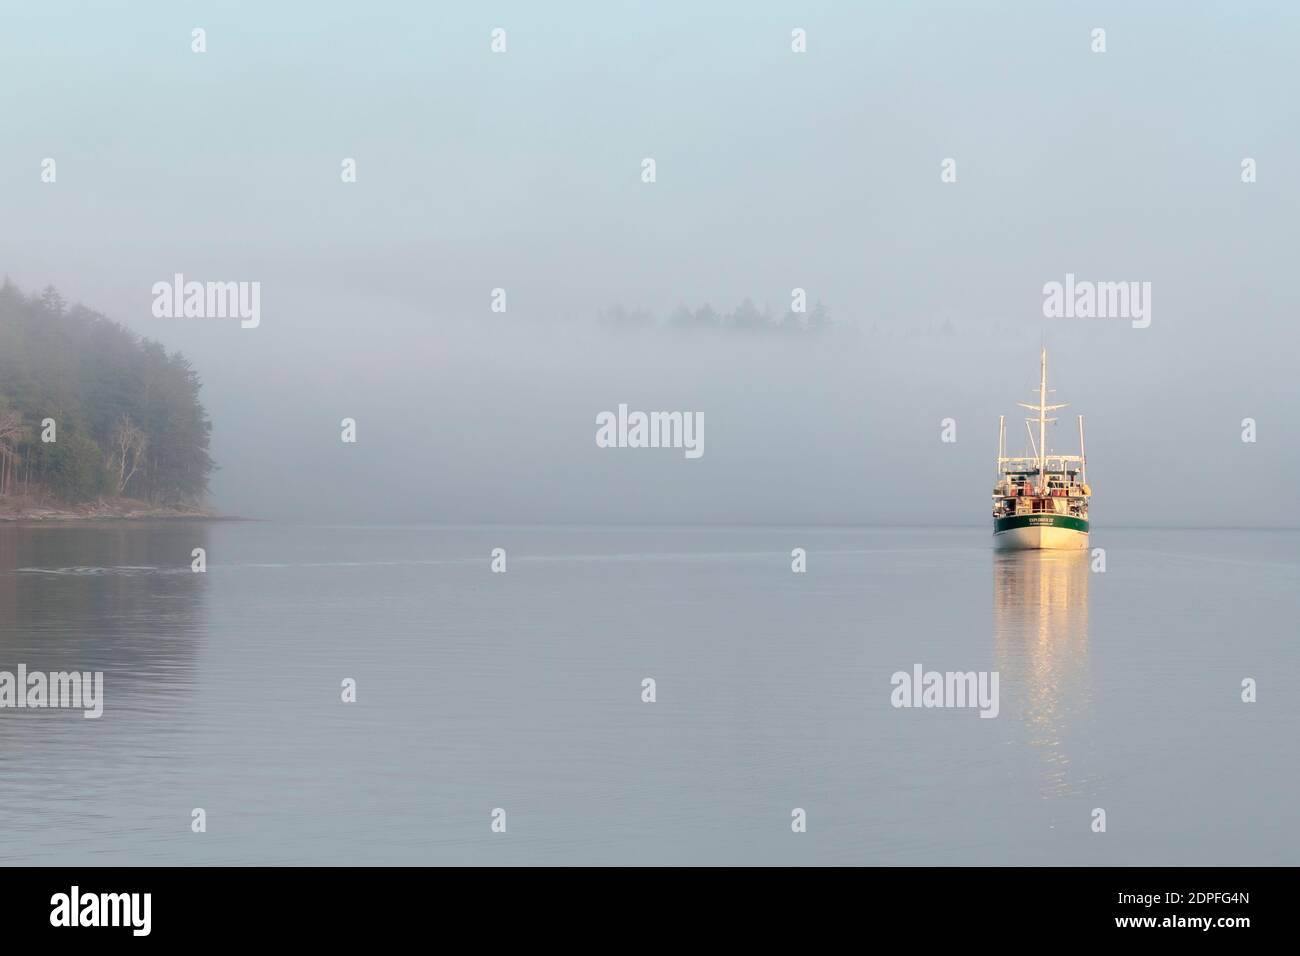 Un barco de placer está en marcha con cautela en una mañana niebla, no hay monumentos visibles excepto un punto cercano y unas cuantas copas de los árboles en una costa distante. Foto de stock